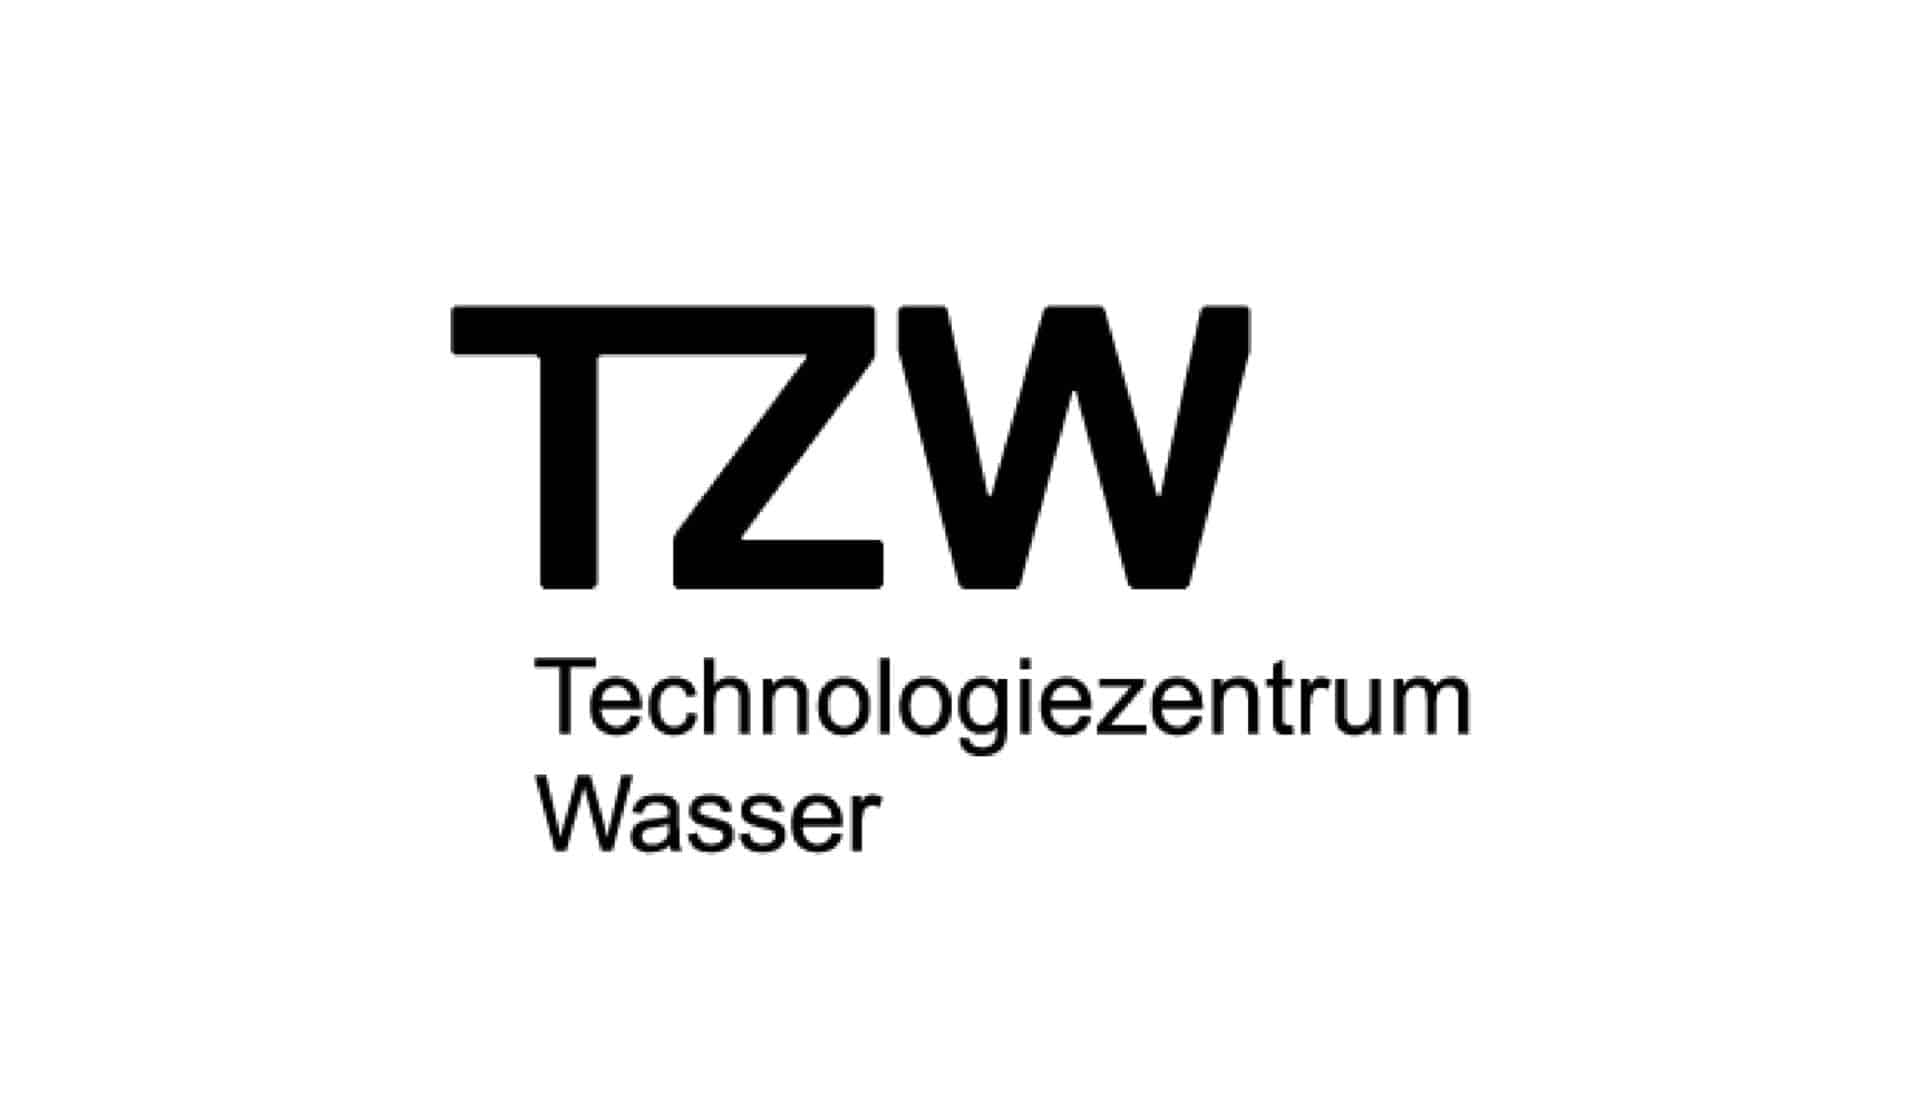 TZW Technologiezentrum Wasser logo in black text